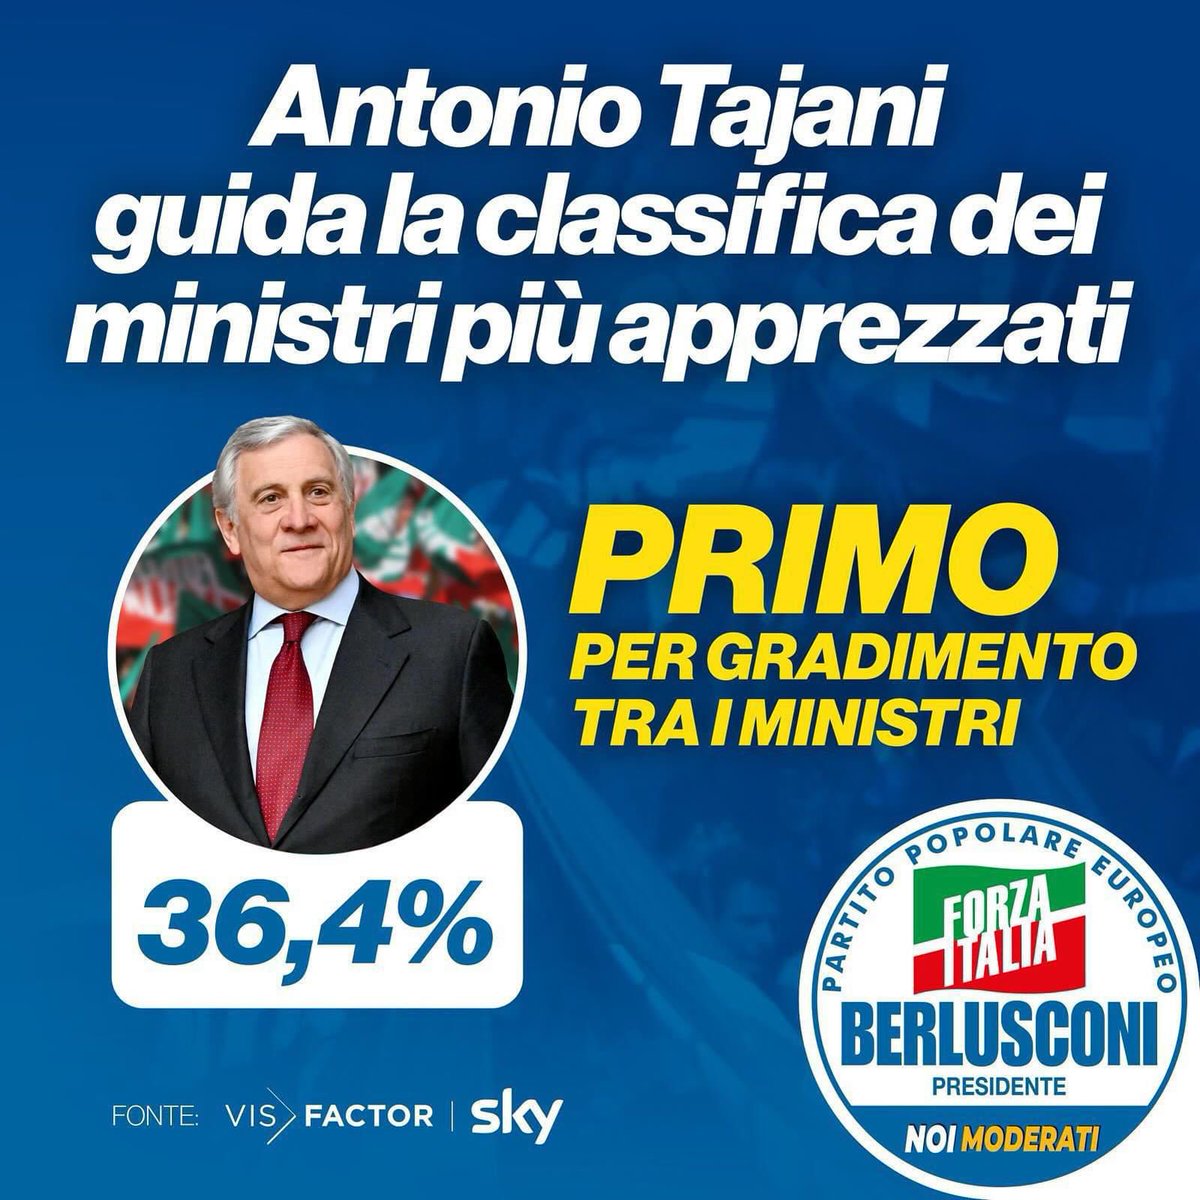 Il sentimento che percepiamo facendo campagna elettorale per @forza_italia è confermato dai numeri. Il nostro segretario nazionale @Antonio_Tajani , dalle ultime rilevazioni trasmesse da @SkyTG24, risulta essere il ministro più apprezzato dagli italiani. whatsapp.com/channel/0029Va…